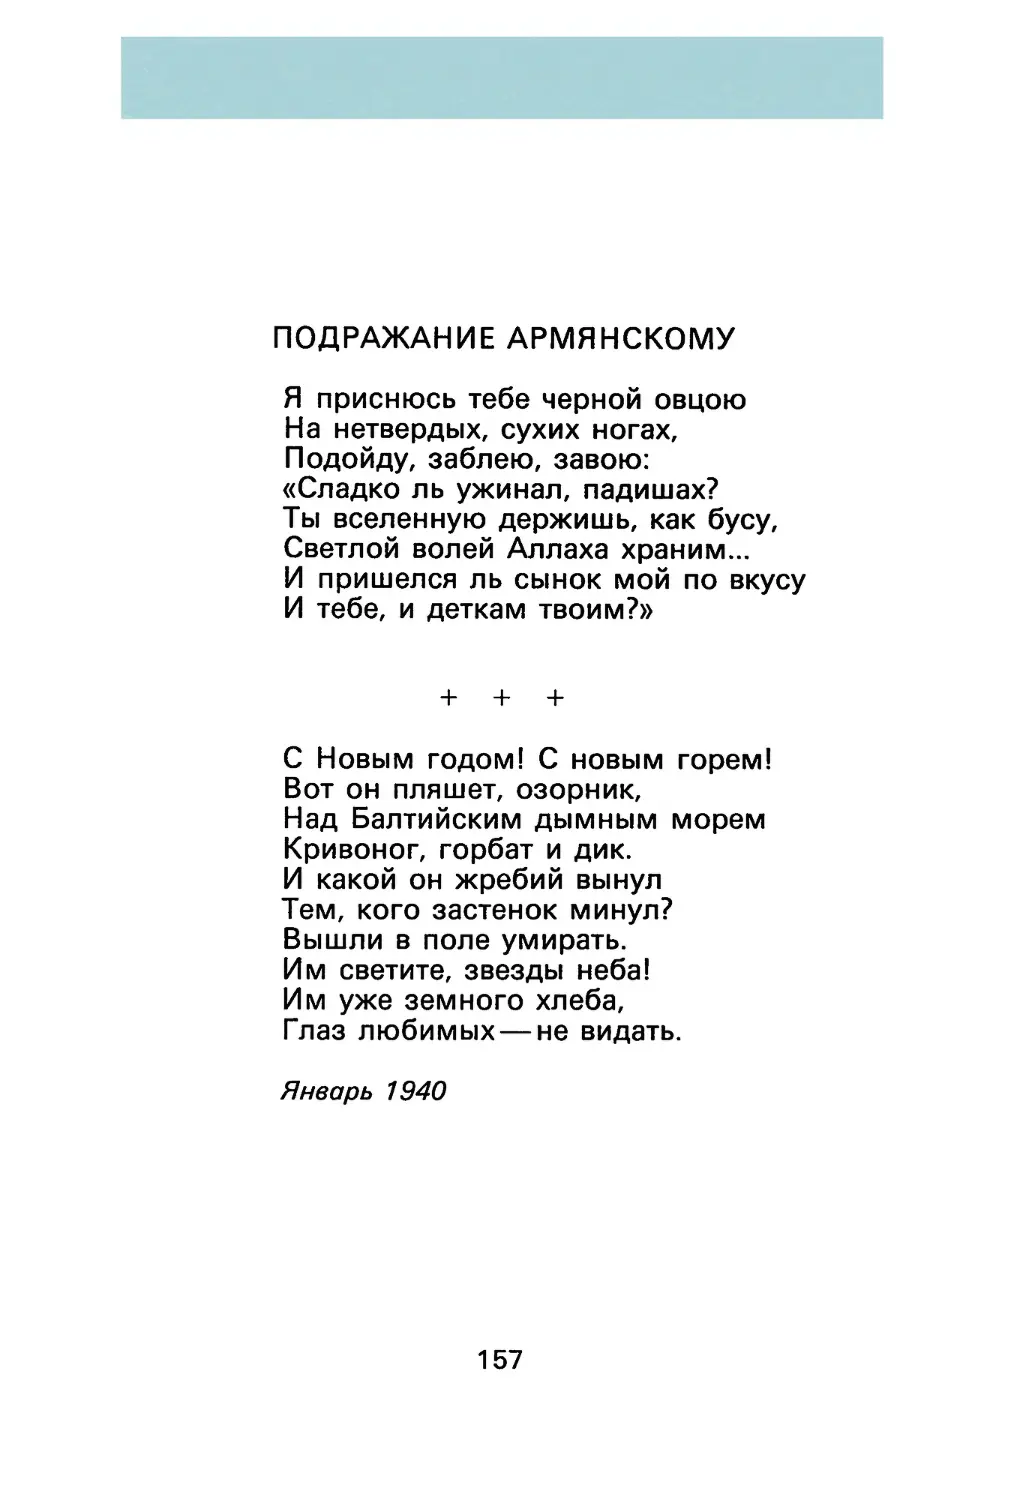 Анна Ахматова
«С Новым годом! С новым горем!»